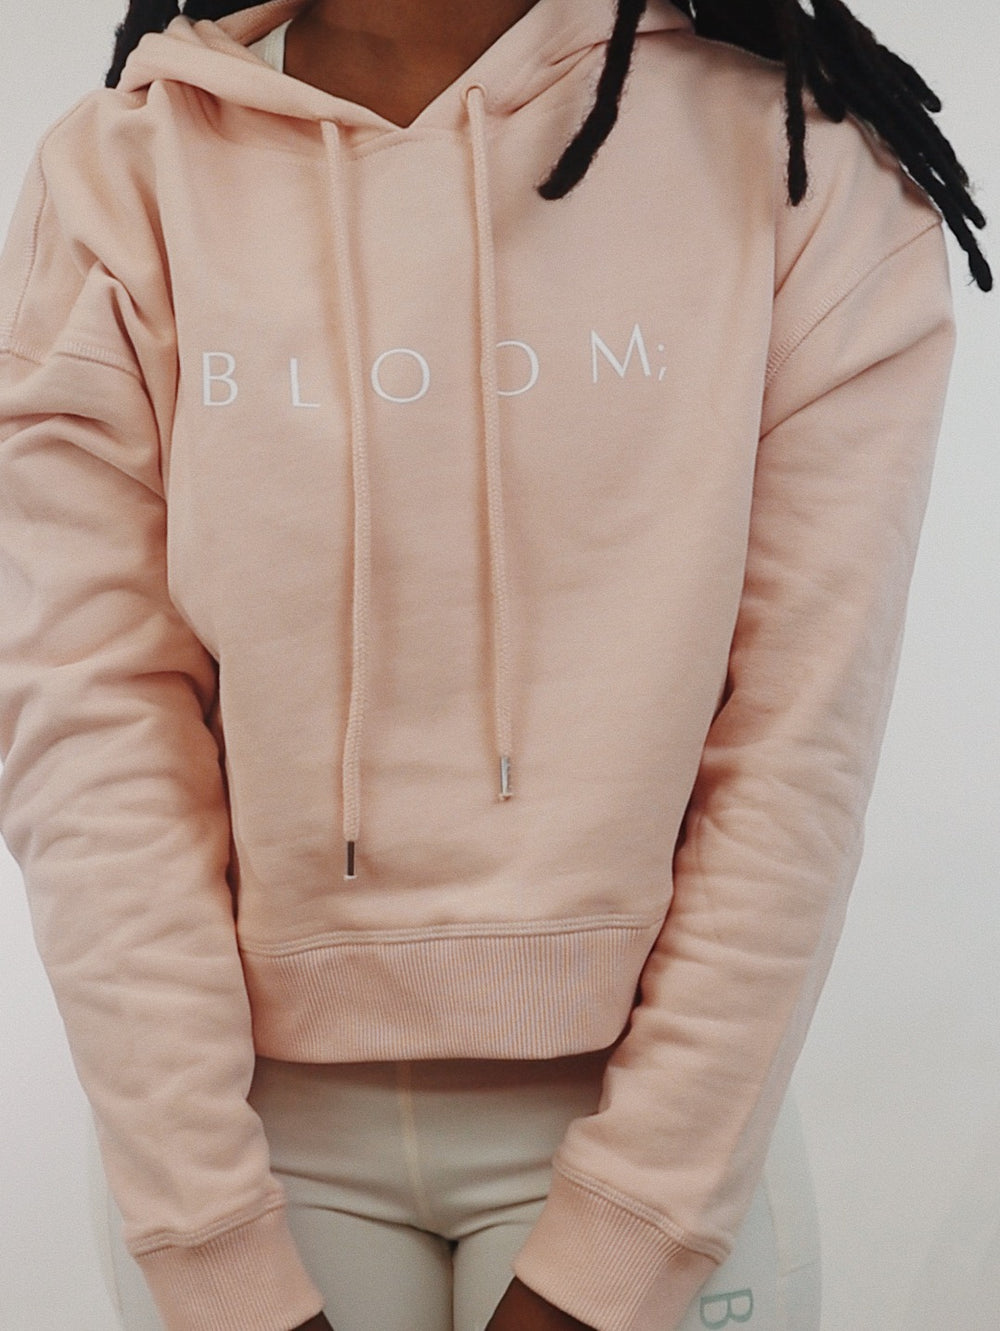 Bloom Crop Top Hoodie - Pink